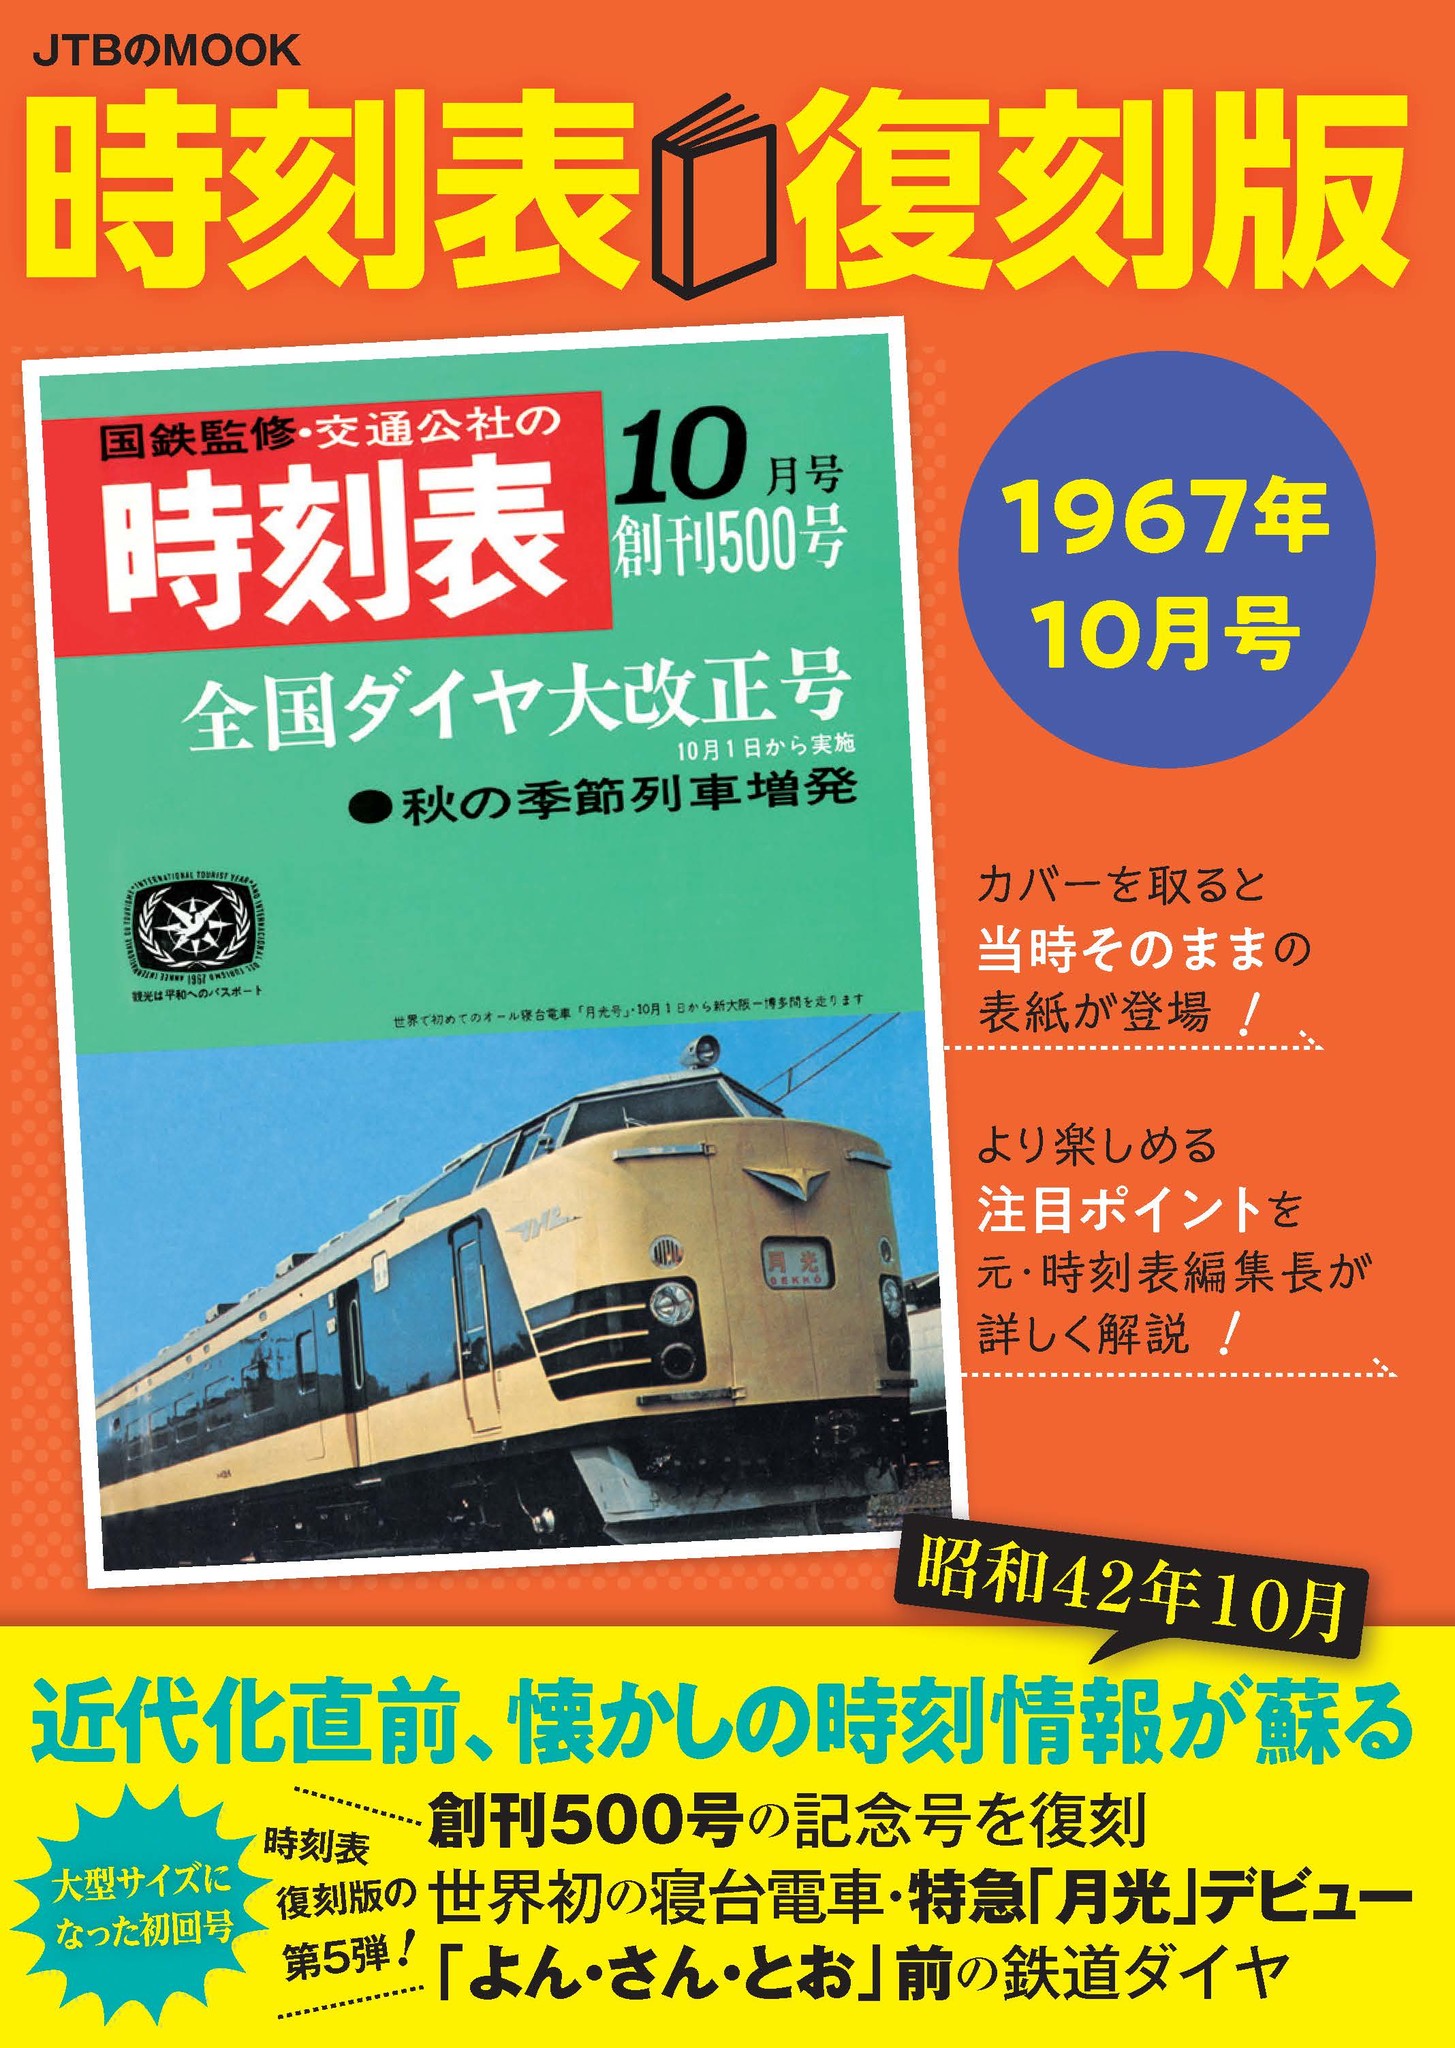 ダイヤ式時刻表 昭和44年10月1日改正 日本国有鉄道中国